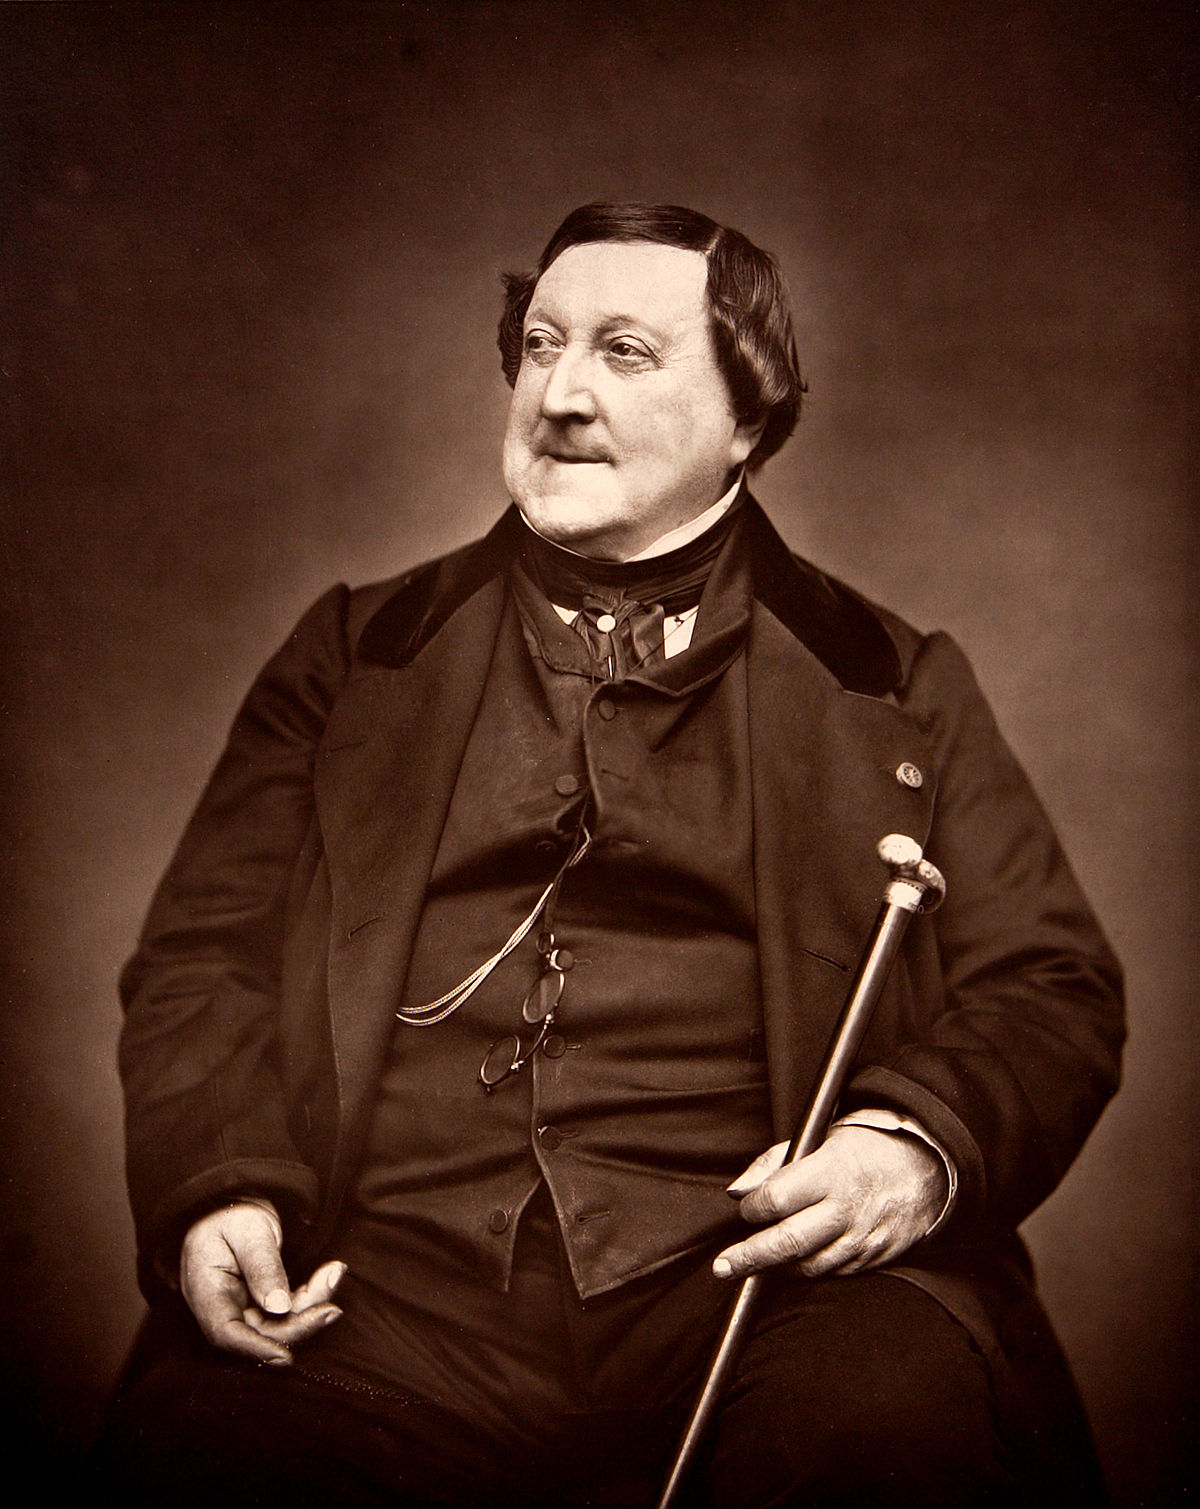  Biografi över Gioachino Rossini